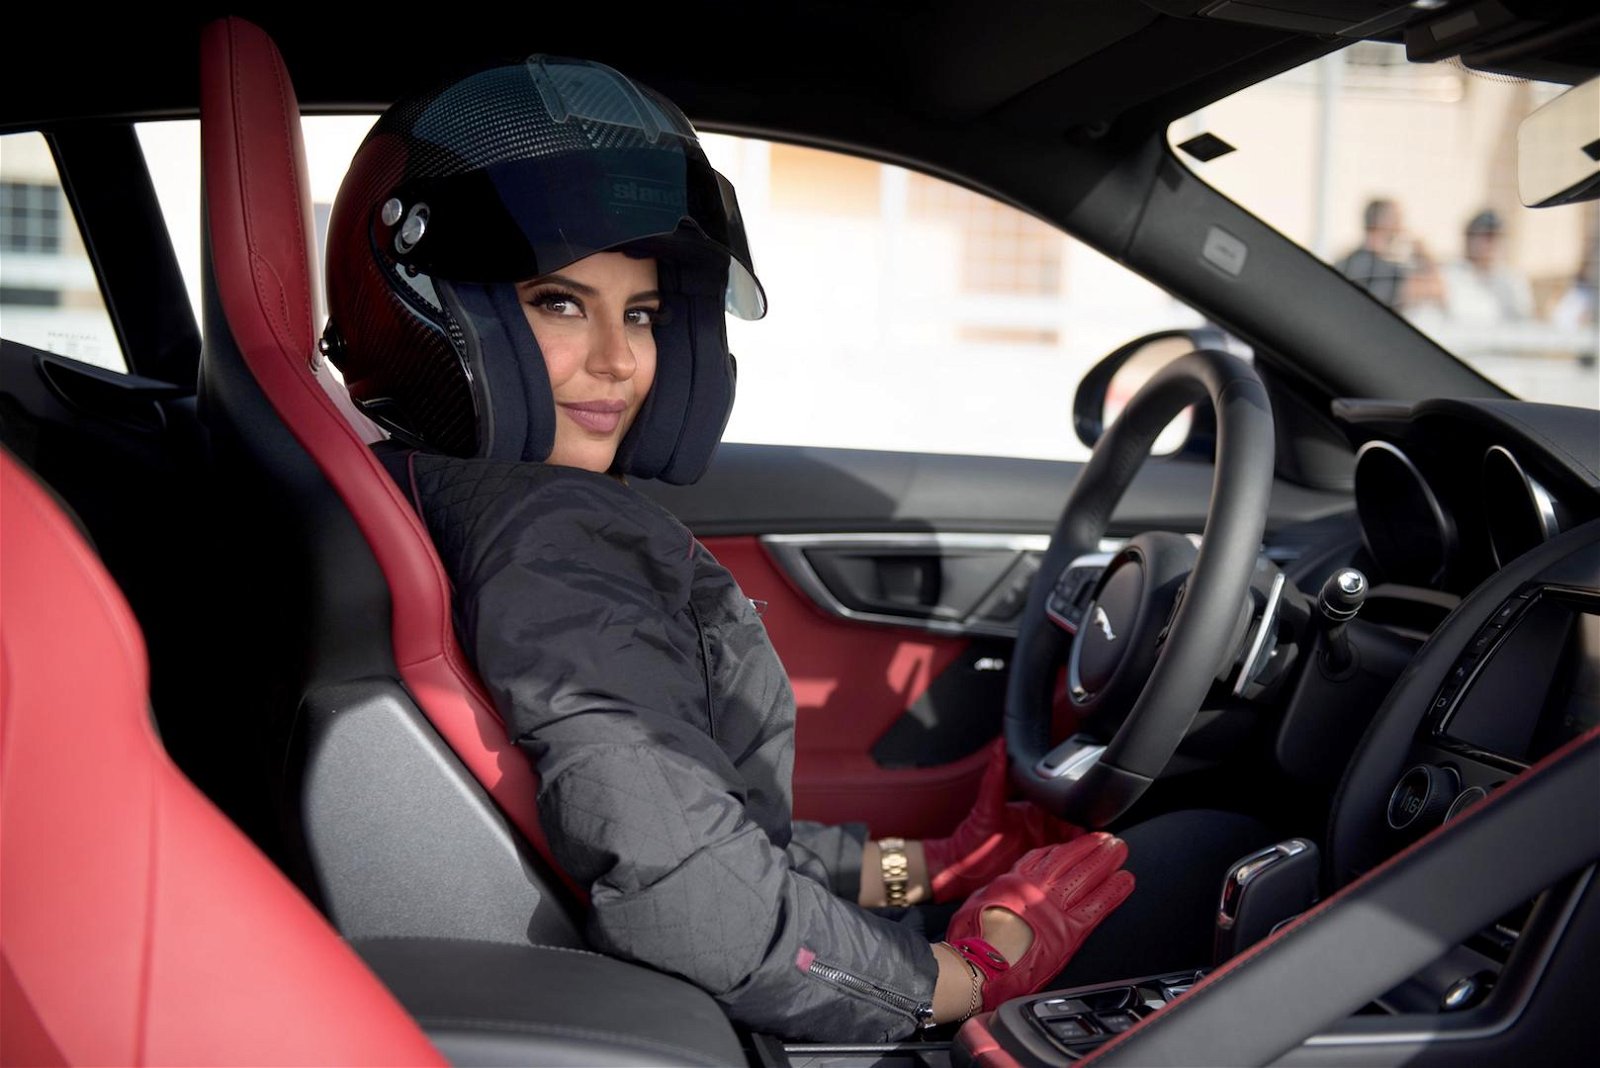 jaguar f-type saudi arabia women driving ban 1